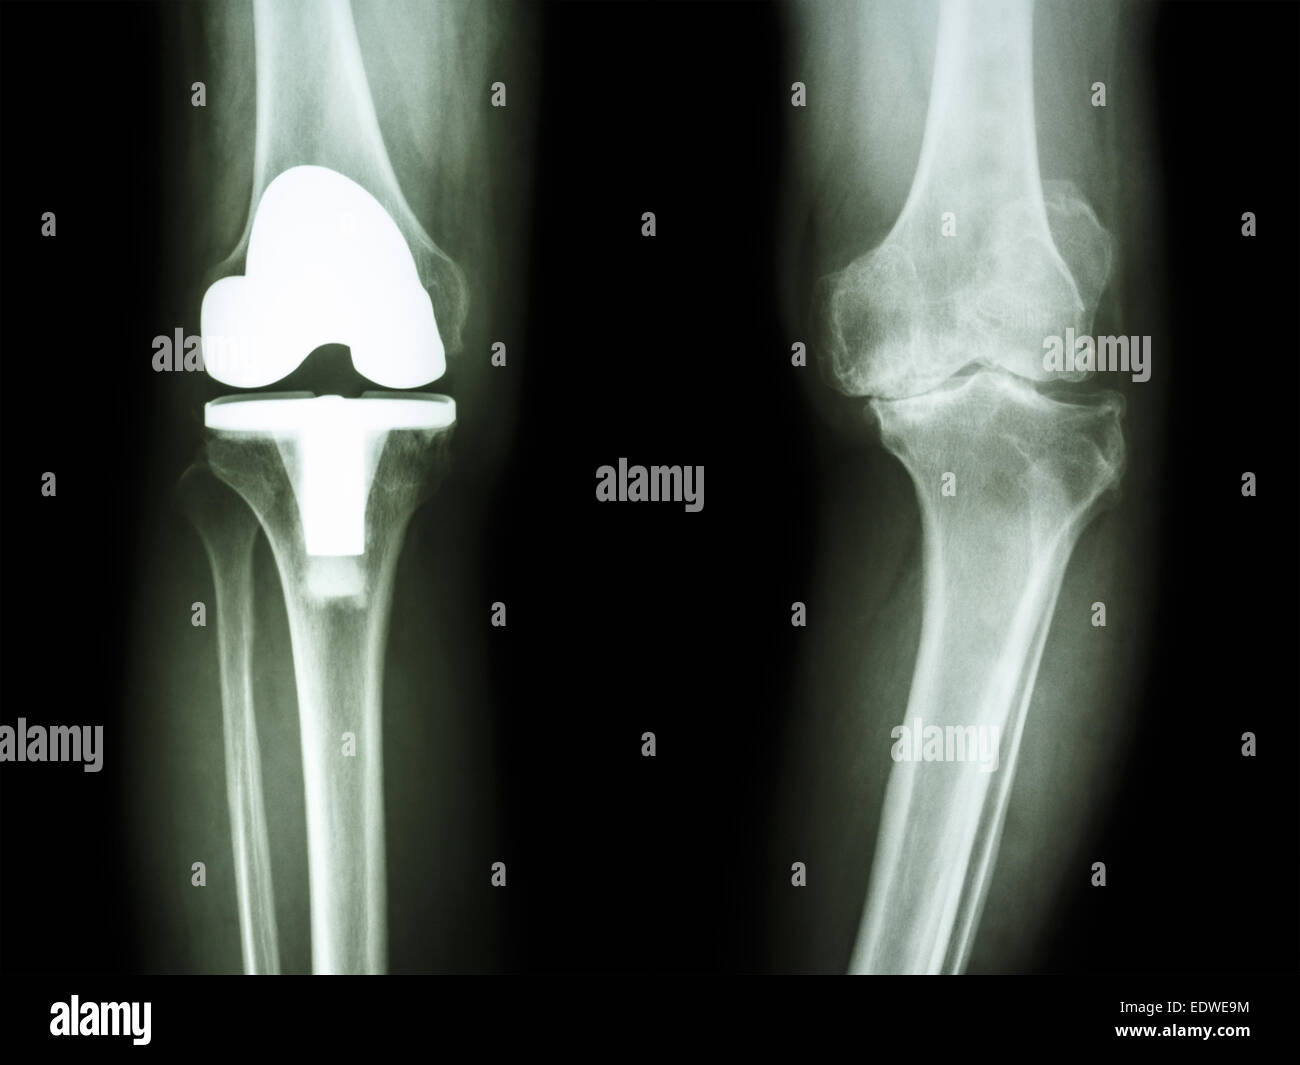 Película de rayos x de rodilla osteoartritis de la rodilla del paciente y de la articulación artificial Foto de stock